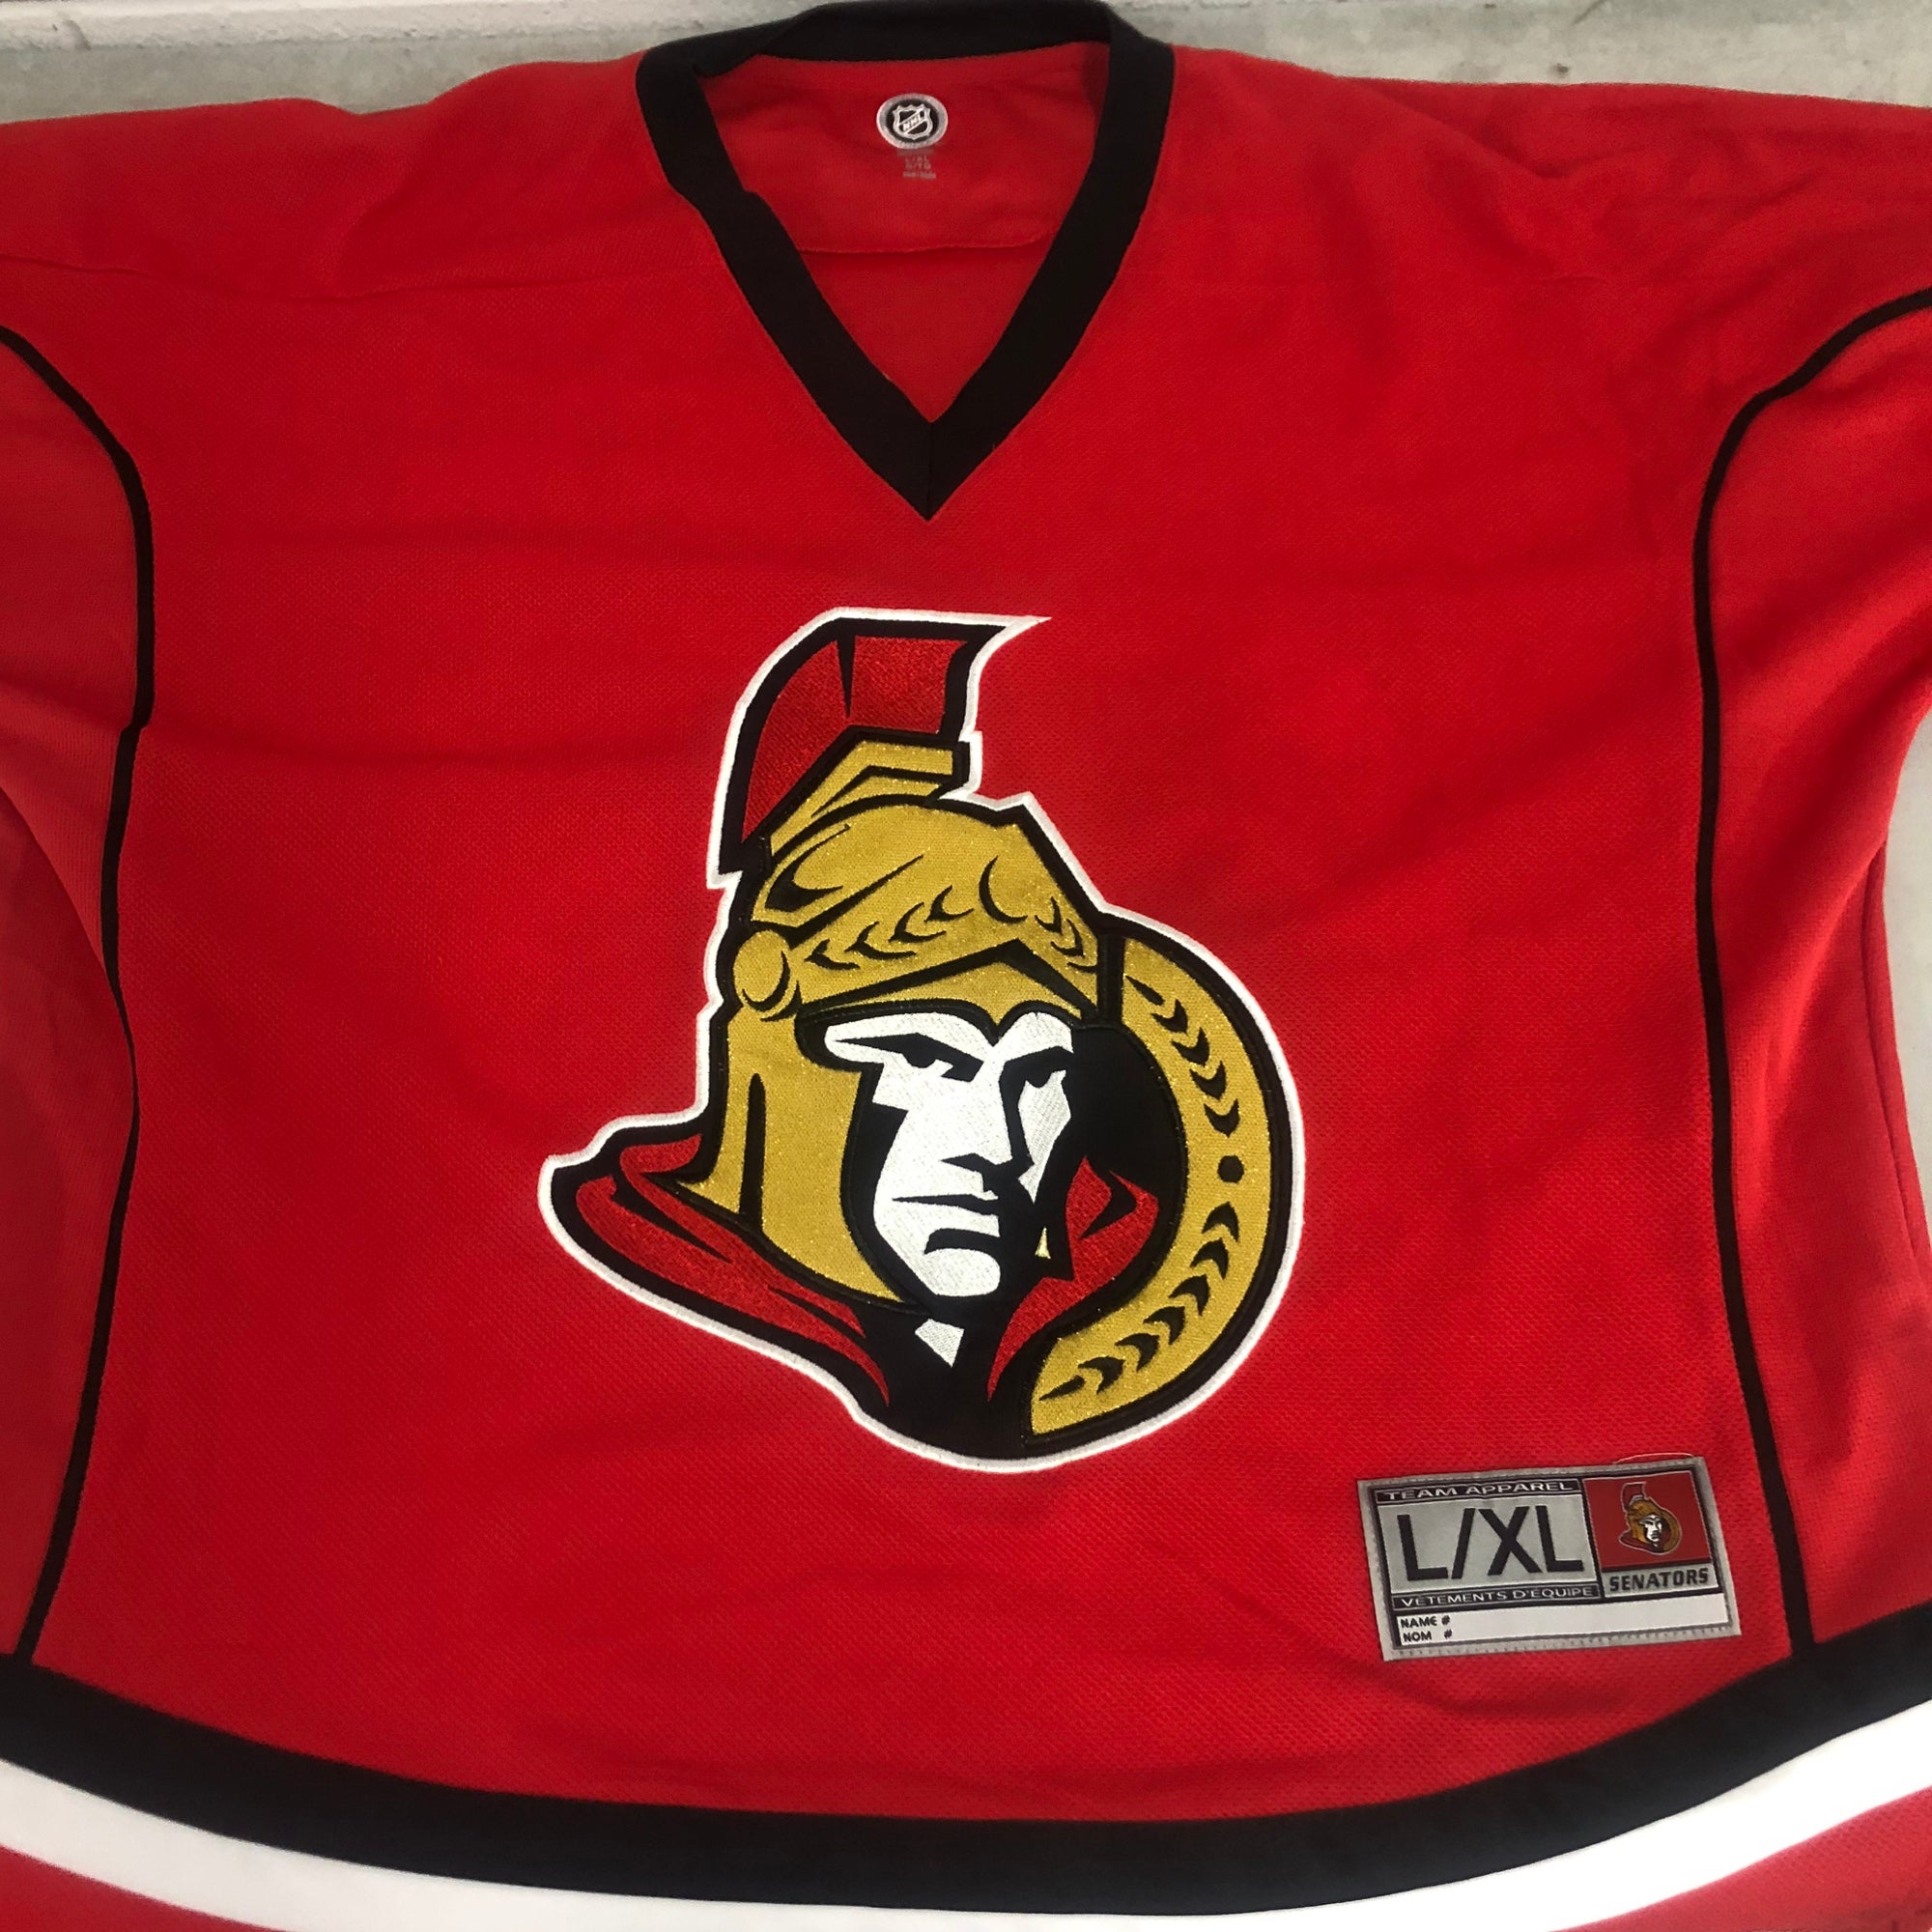 Karlsson's unforgettable Senators jersey